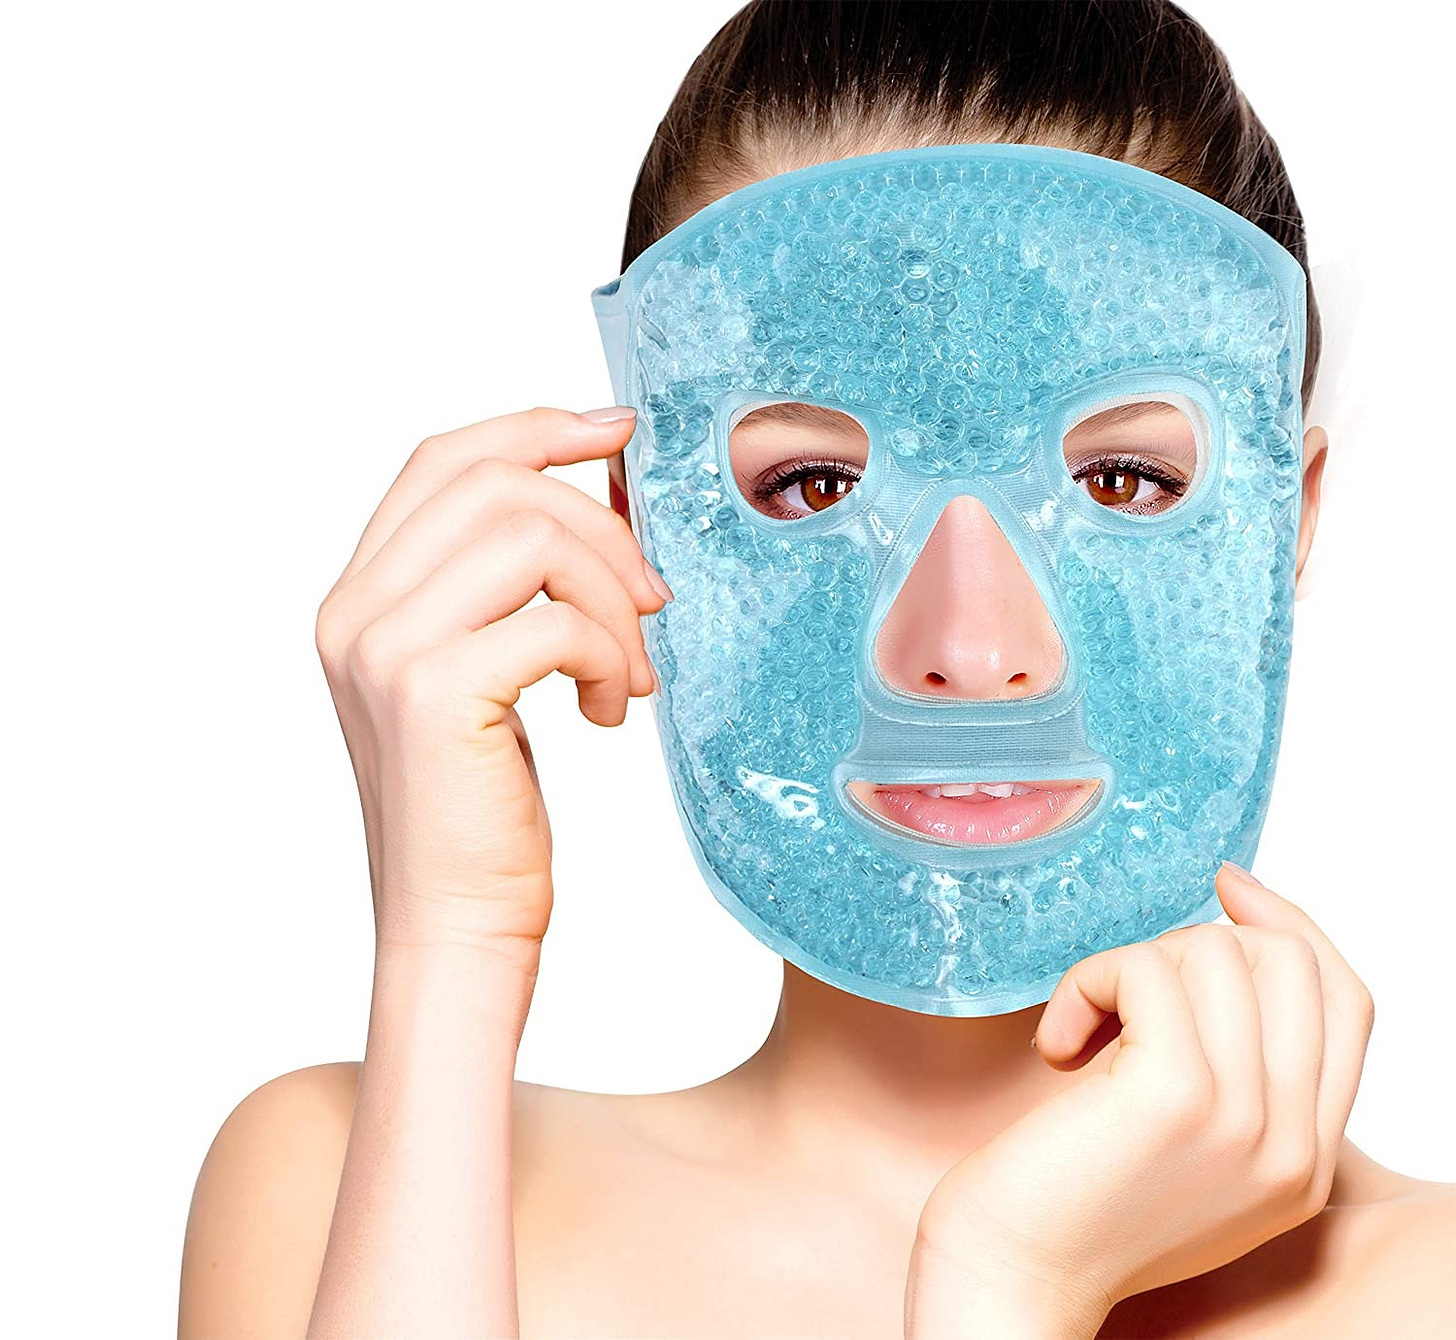 image description: mode plus a terrifying cooling face mask